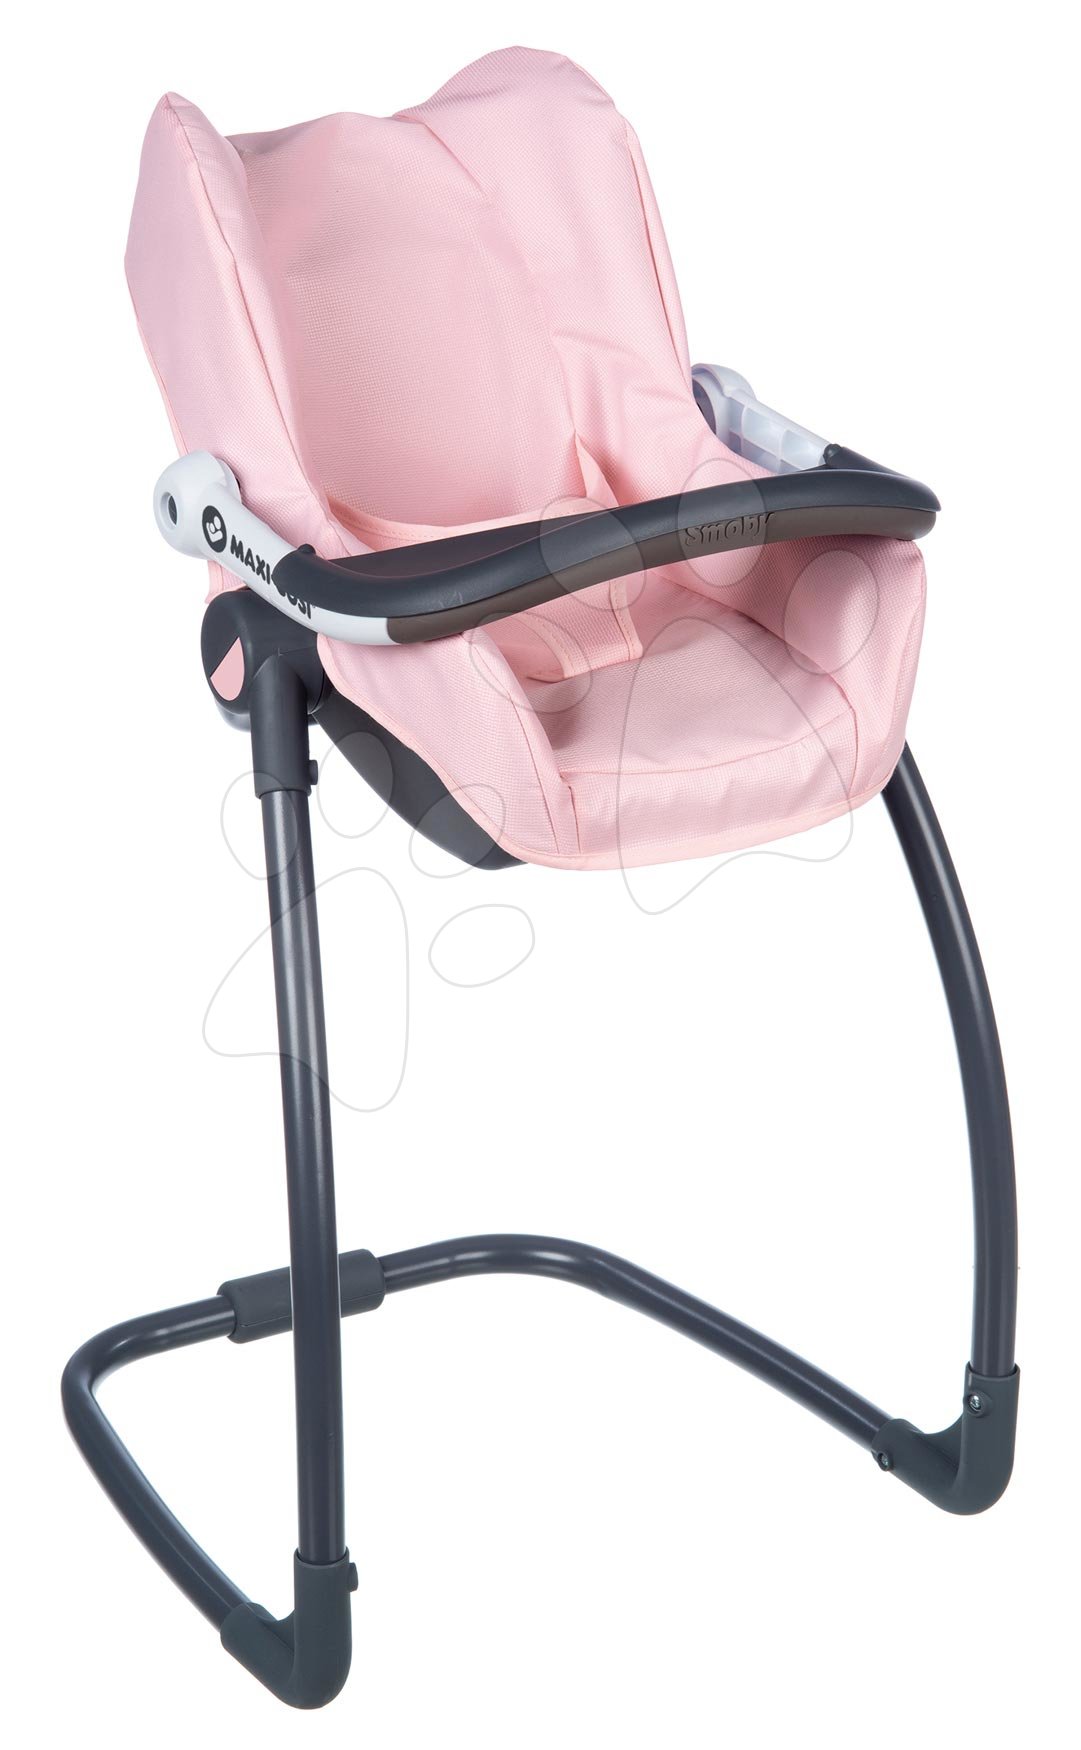 Jedálenská stolička s autosedačkou a hojdačkou Powder Pink Maxi Cosi&Quinny Smoby trojkombinácia s bezpečnostným pásom